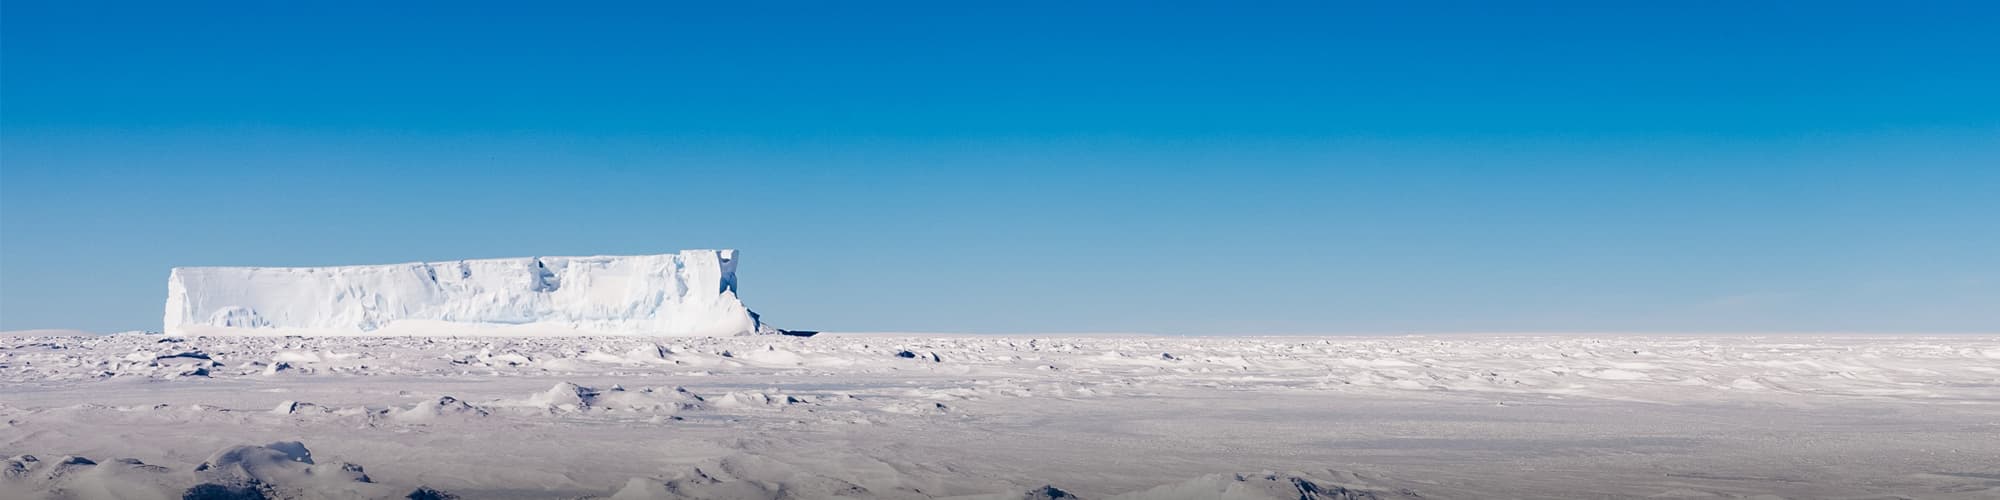 Voyage au Pôle Nord Géographique © Daisy Gilardini/Vicaar